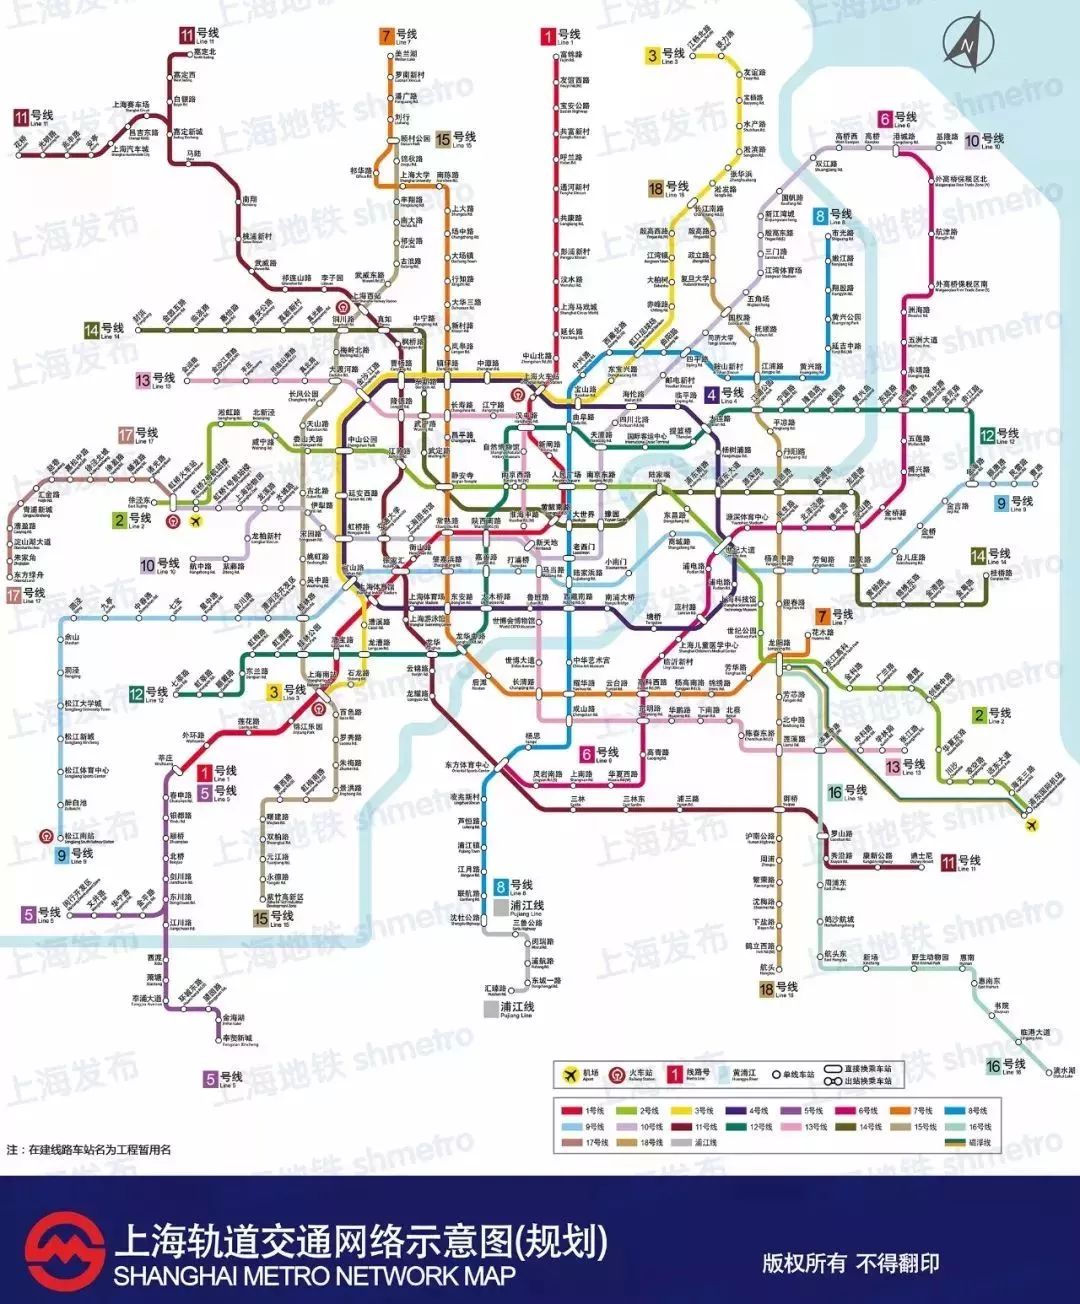 24条线路!600余座车站!上海地铁要上天了!